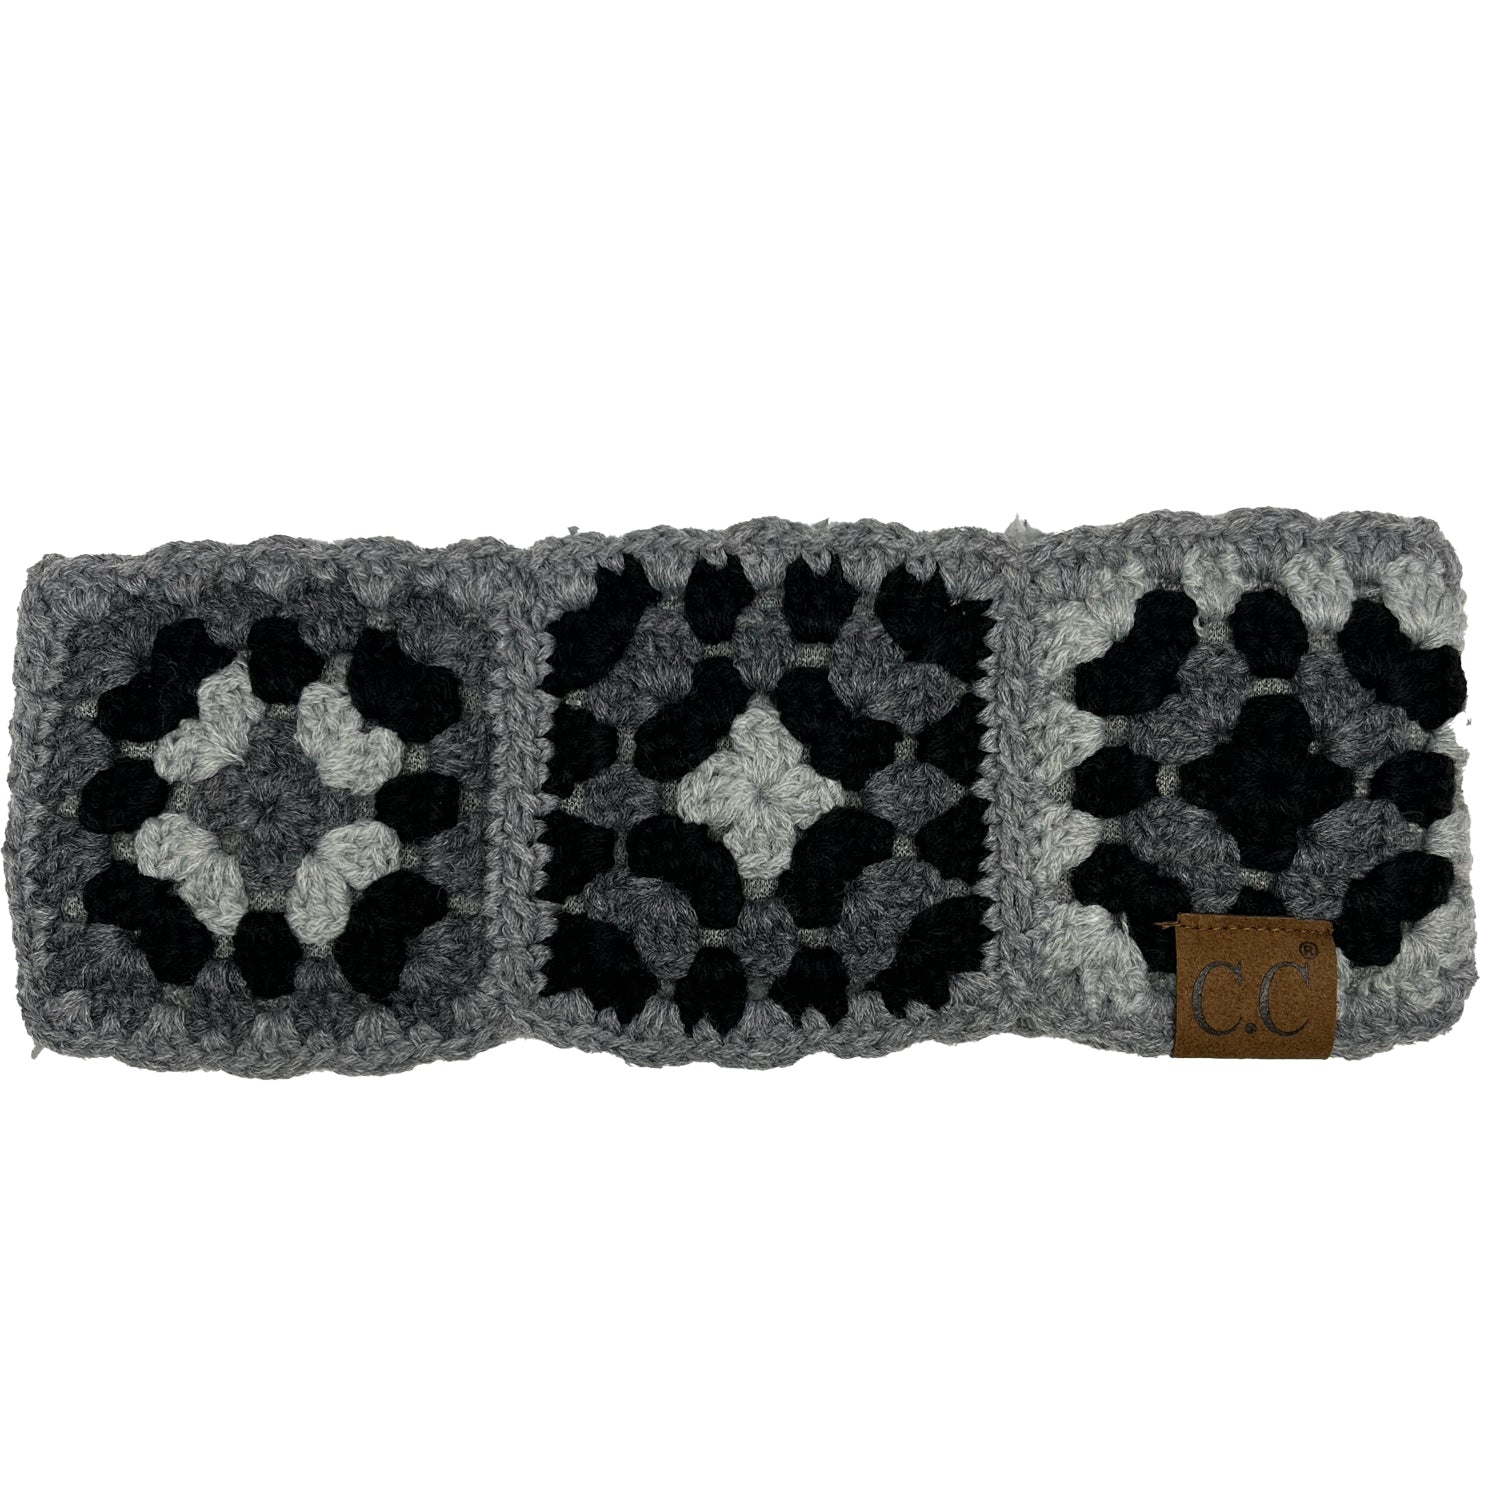 HW-7393 C.C Hand Crocheted Headwrap-Grey